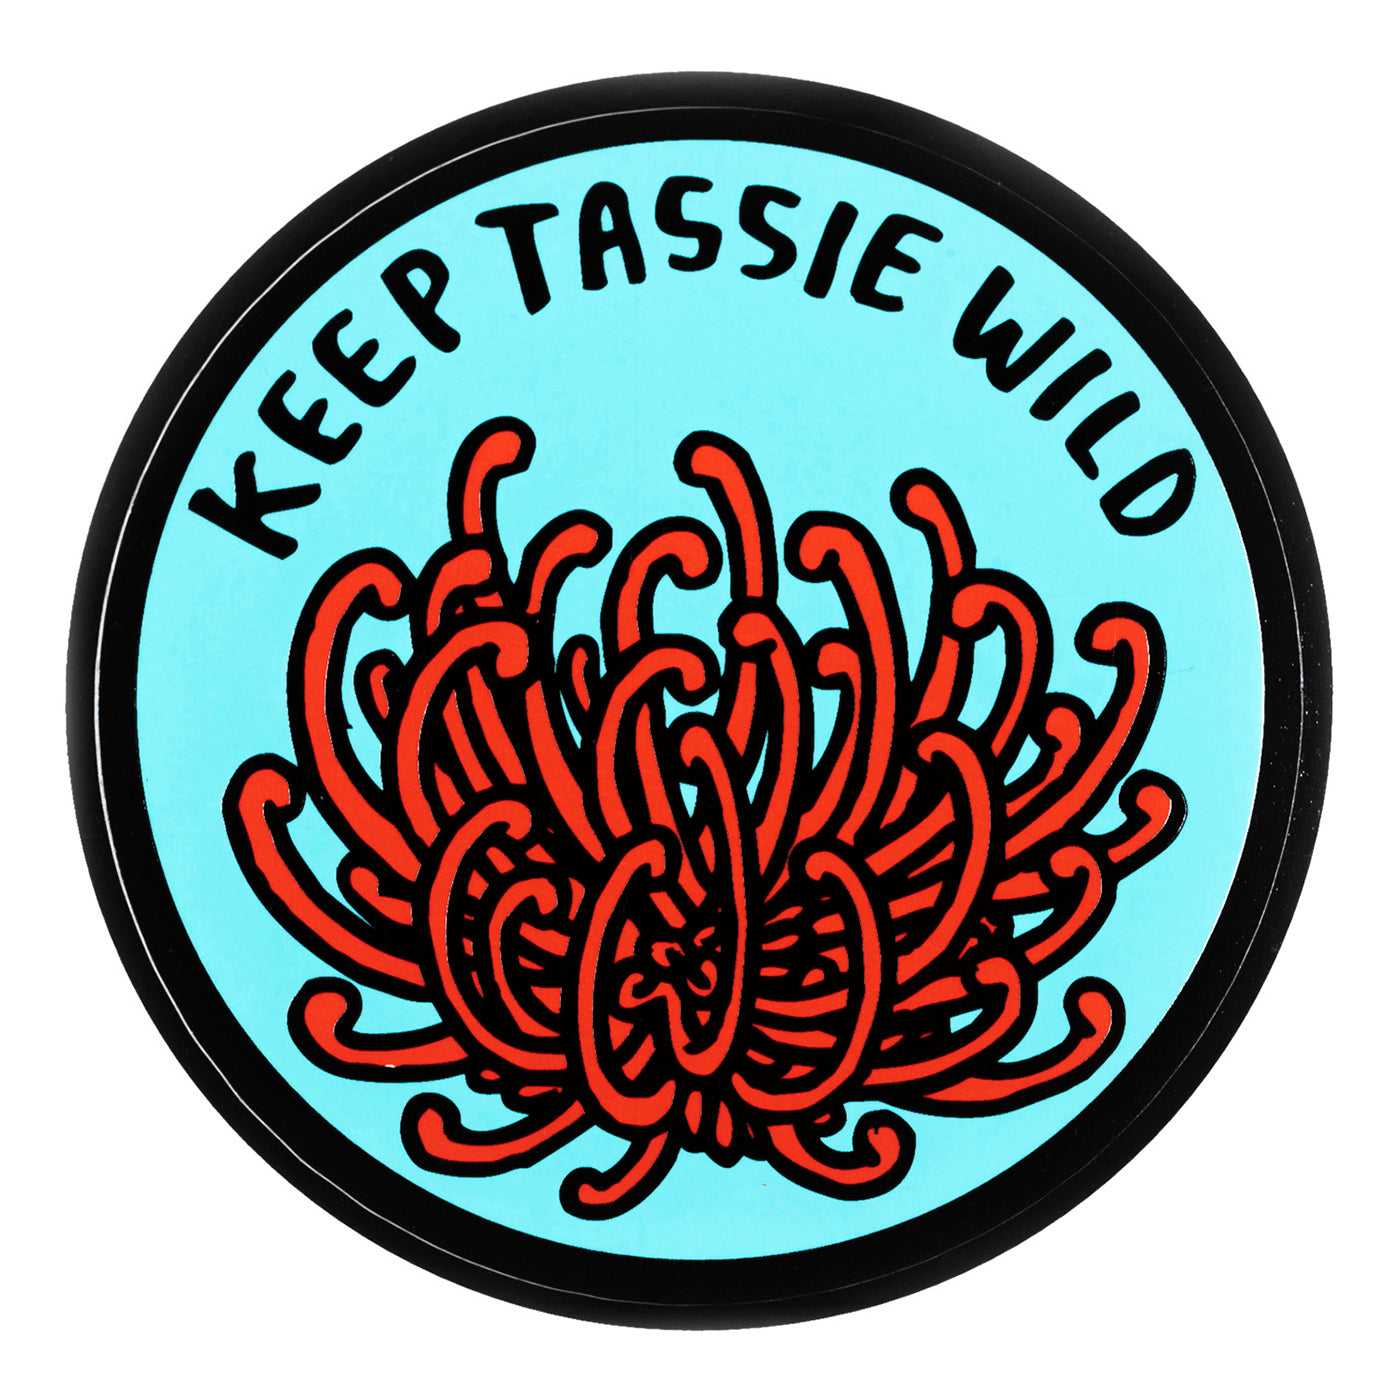 Keep Tassie Wild - Sticker - Waratah